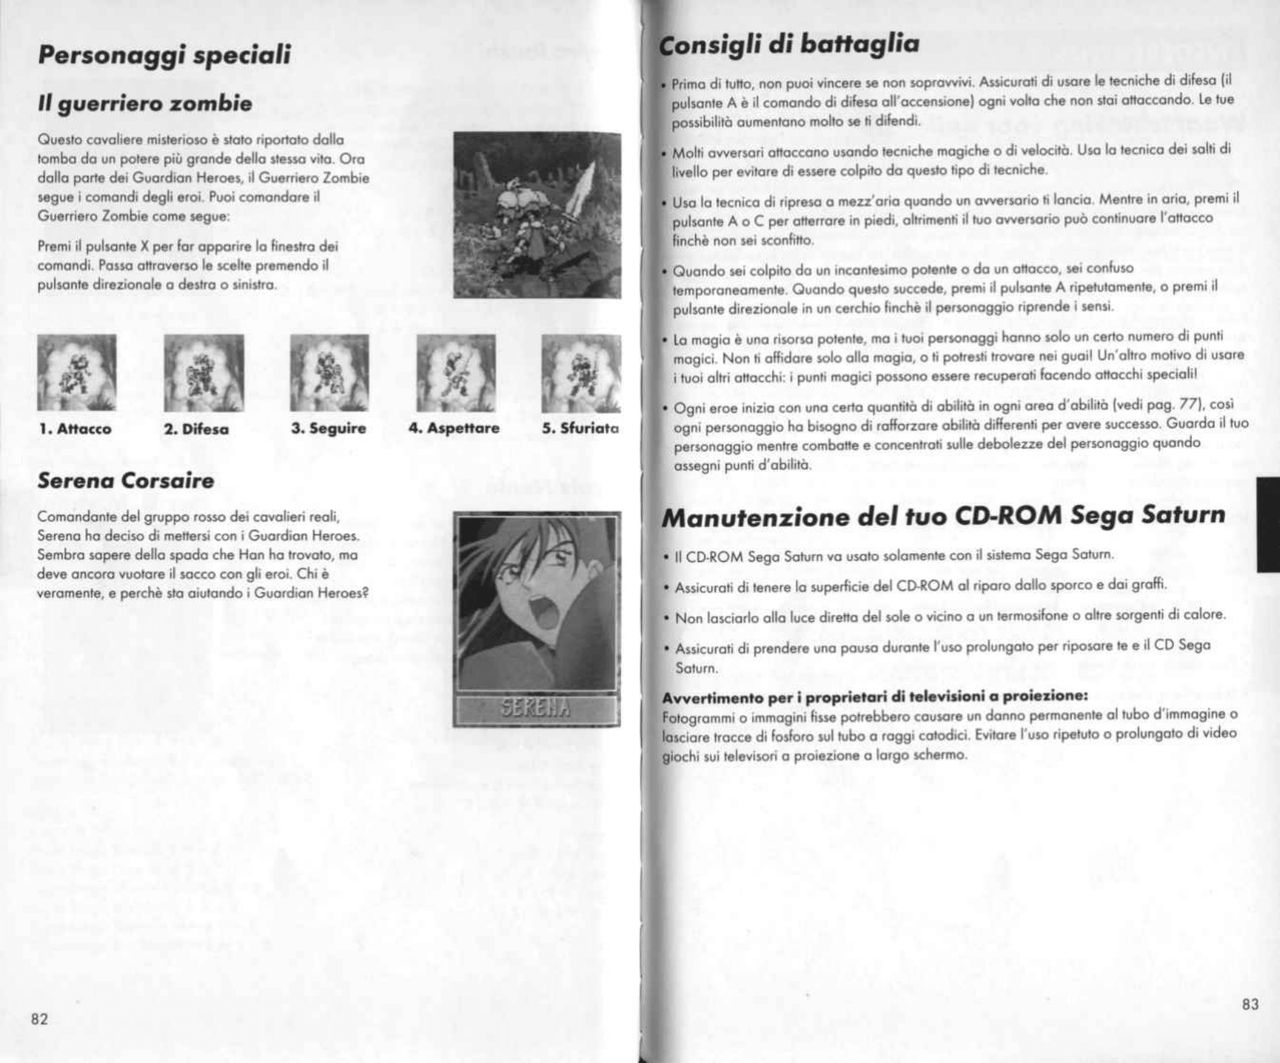 Guardian Heroes (Saturn) Game Manual 42